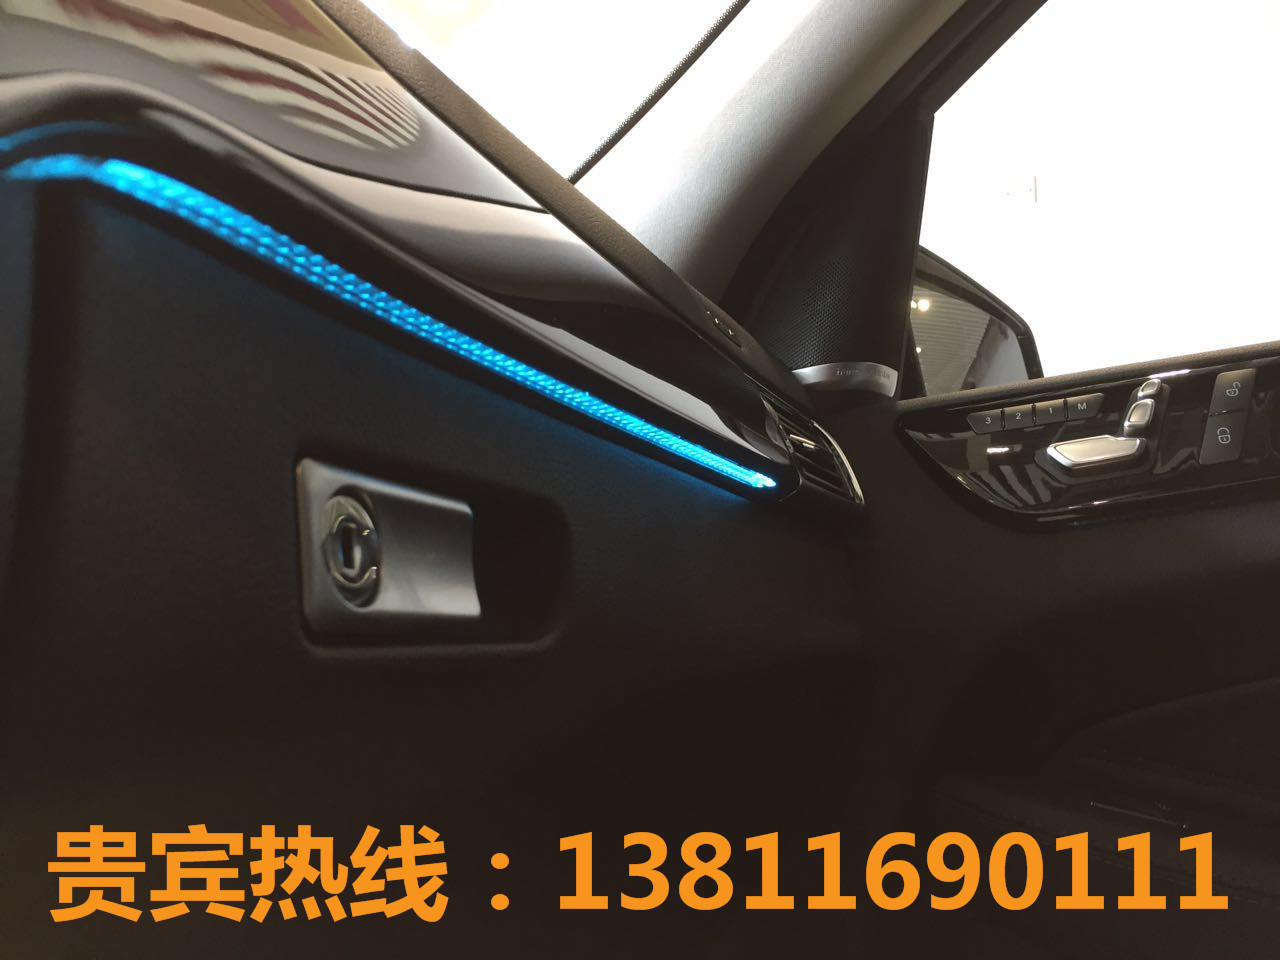 2017款奔驰GLS450北京牌国内现车价格_北京